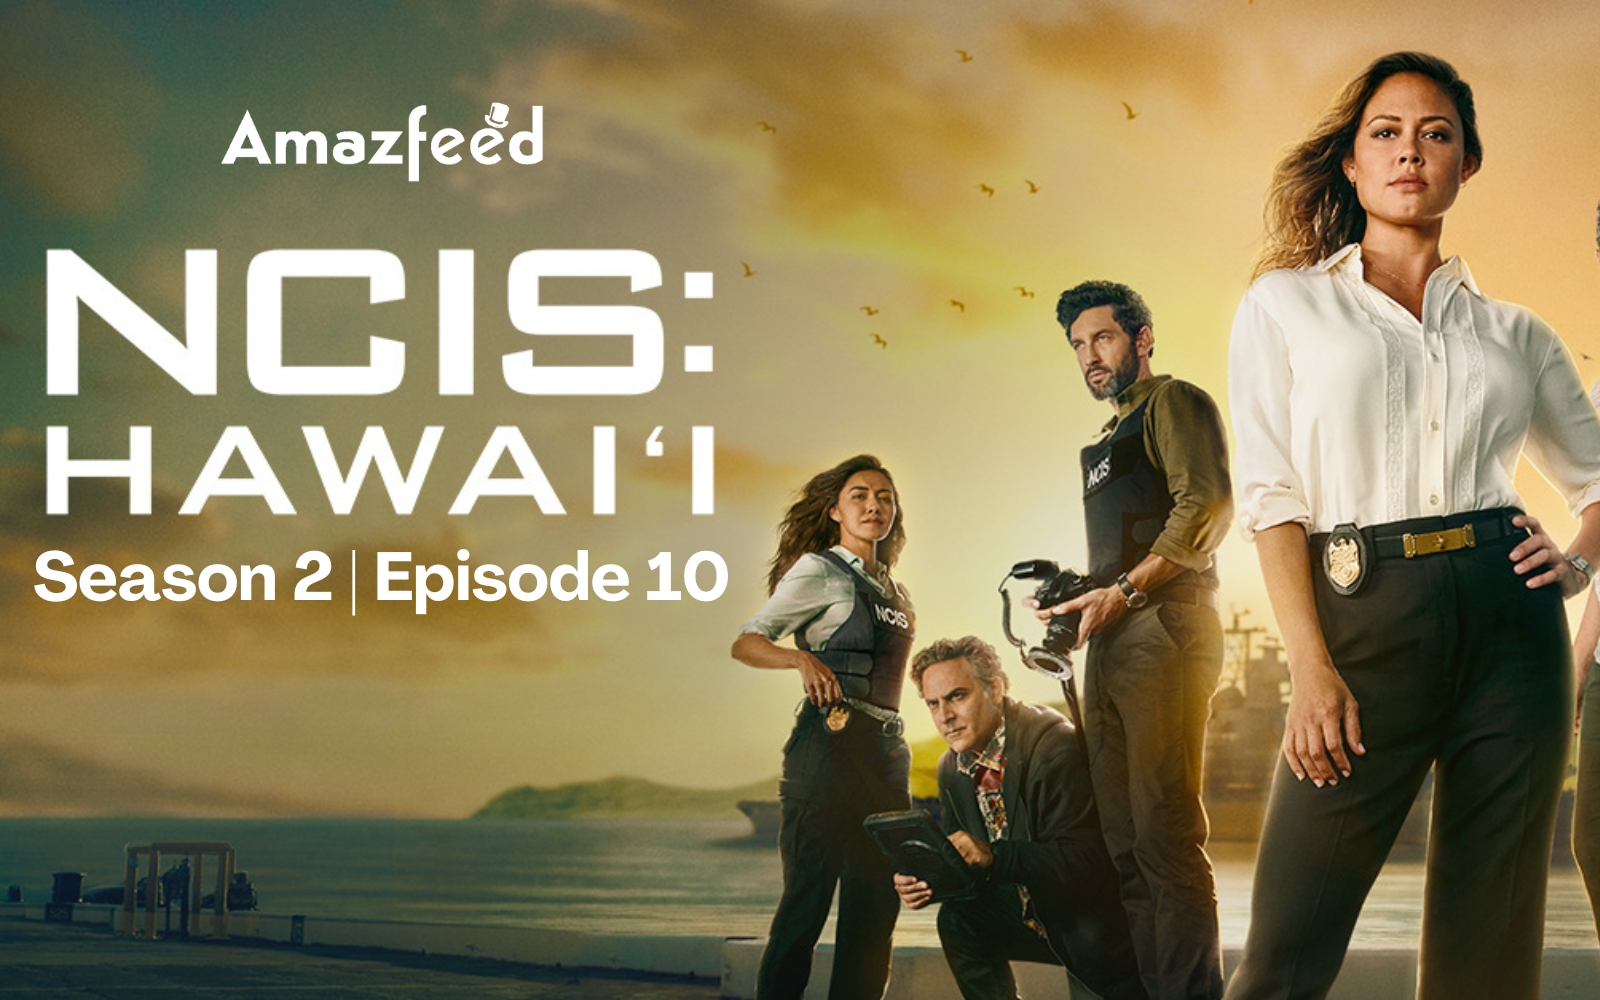 NCIS Hawaii Season 2